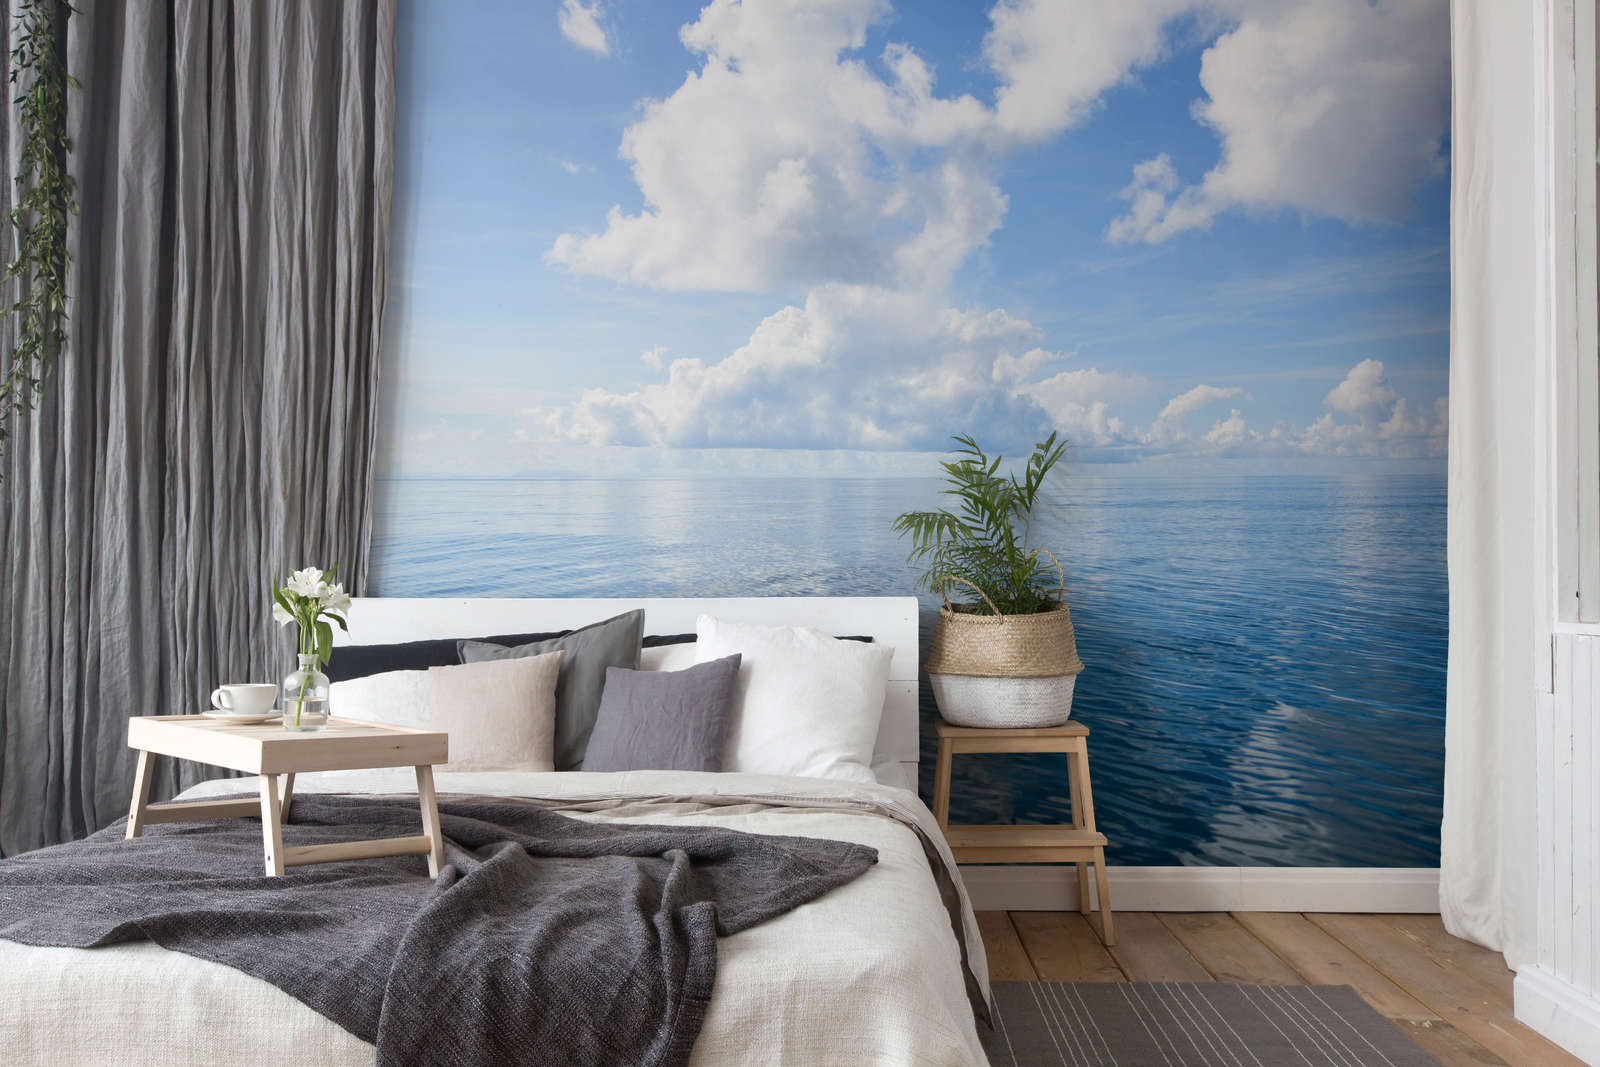             Papel pintado Mar abierto con nubes - Premium Smooth Fleece
        